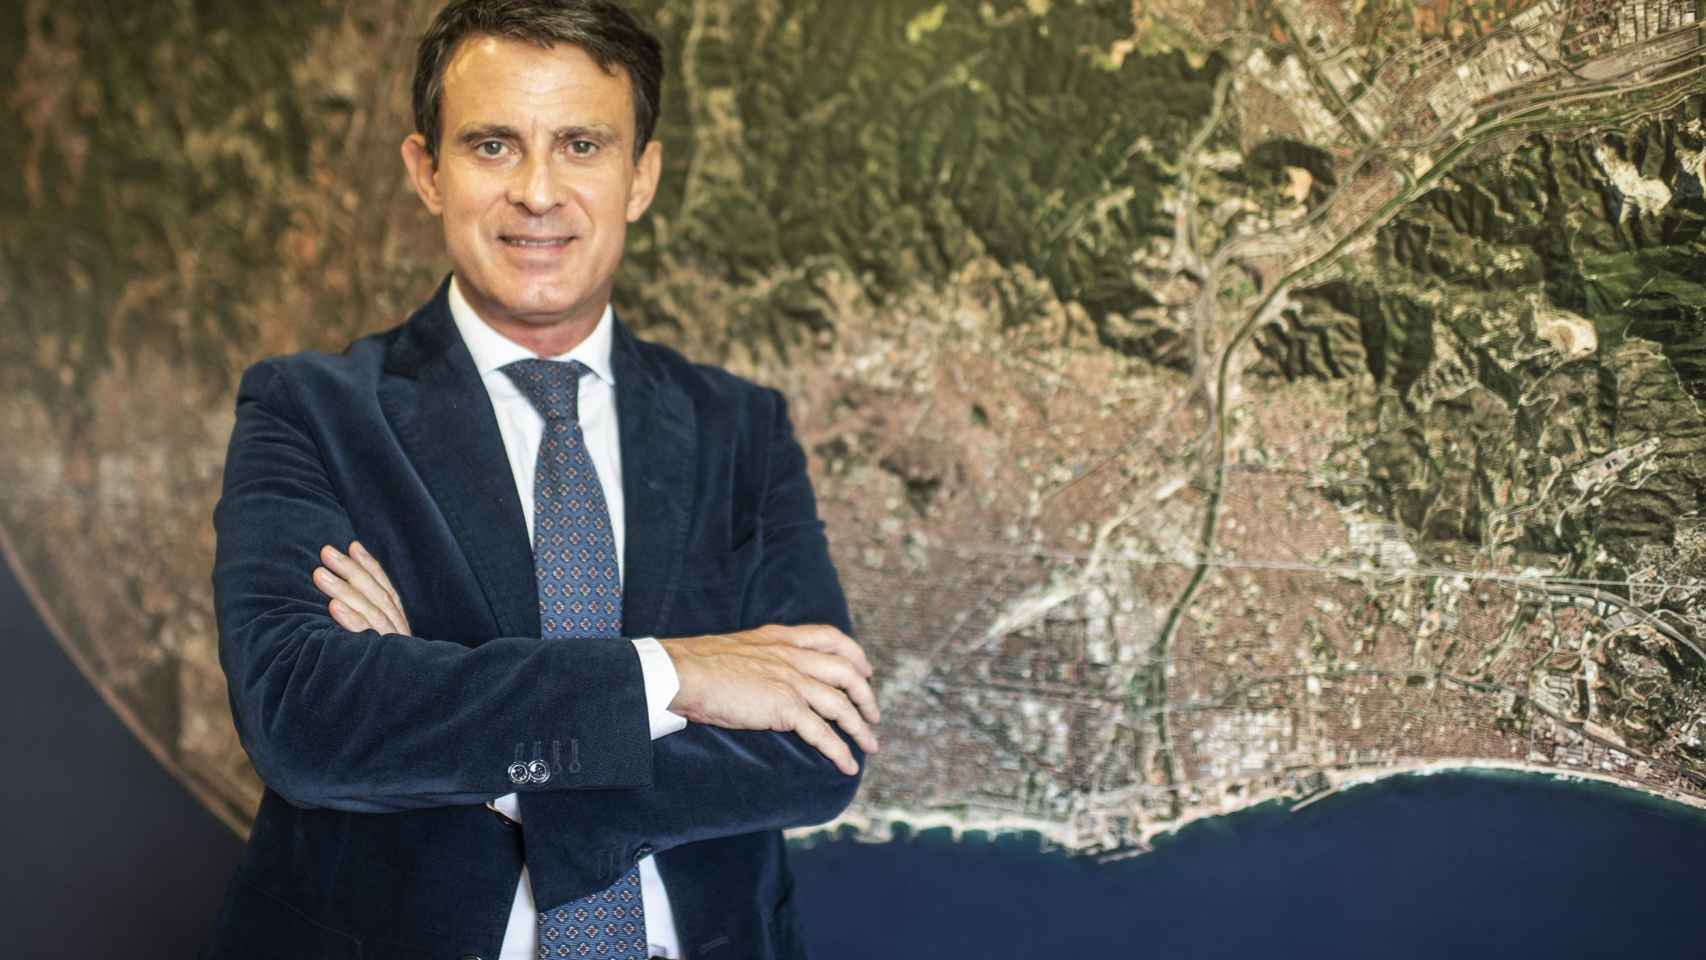 Retrato de Manuel Valls después de la entrevista en su sede